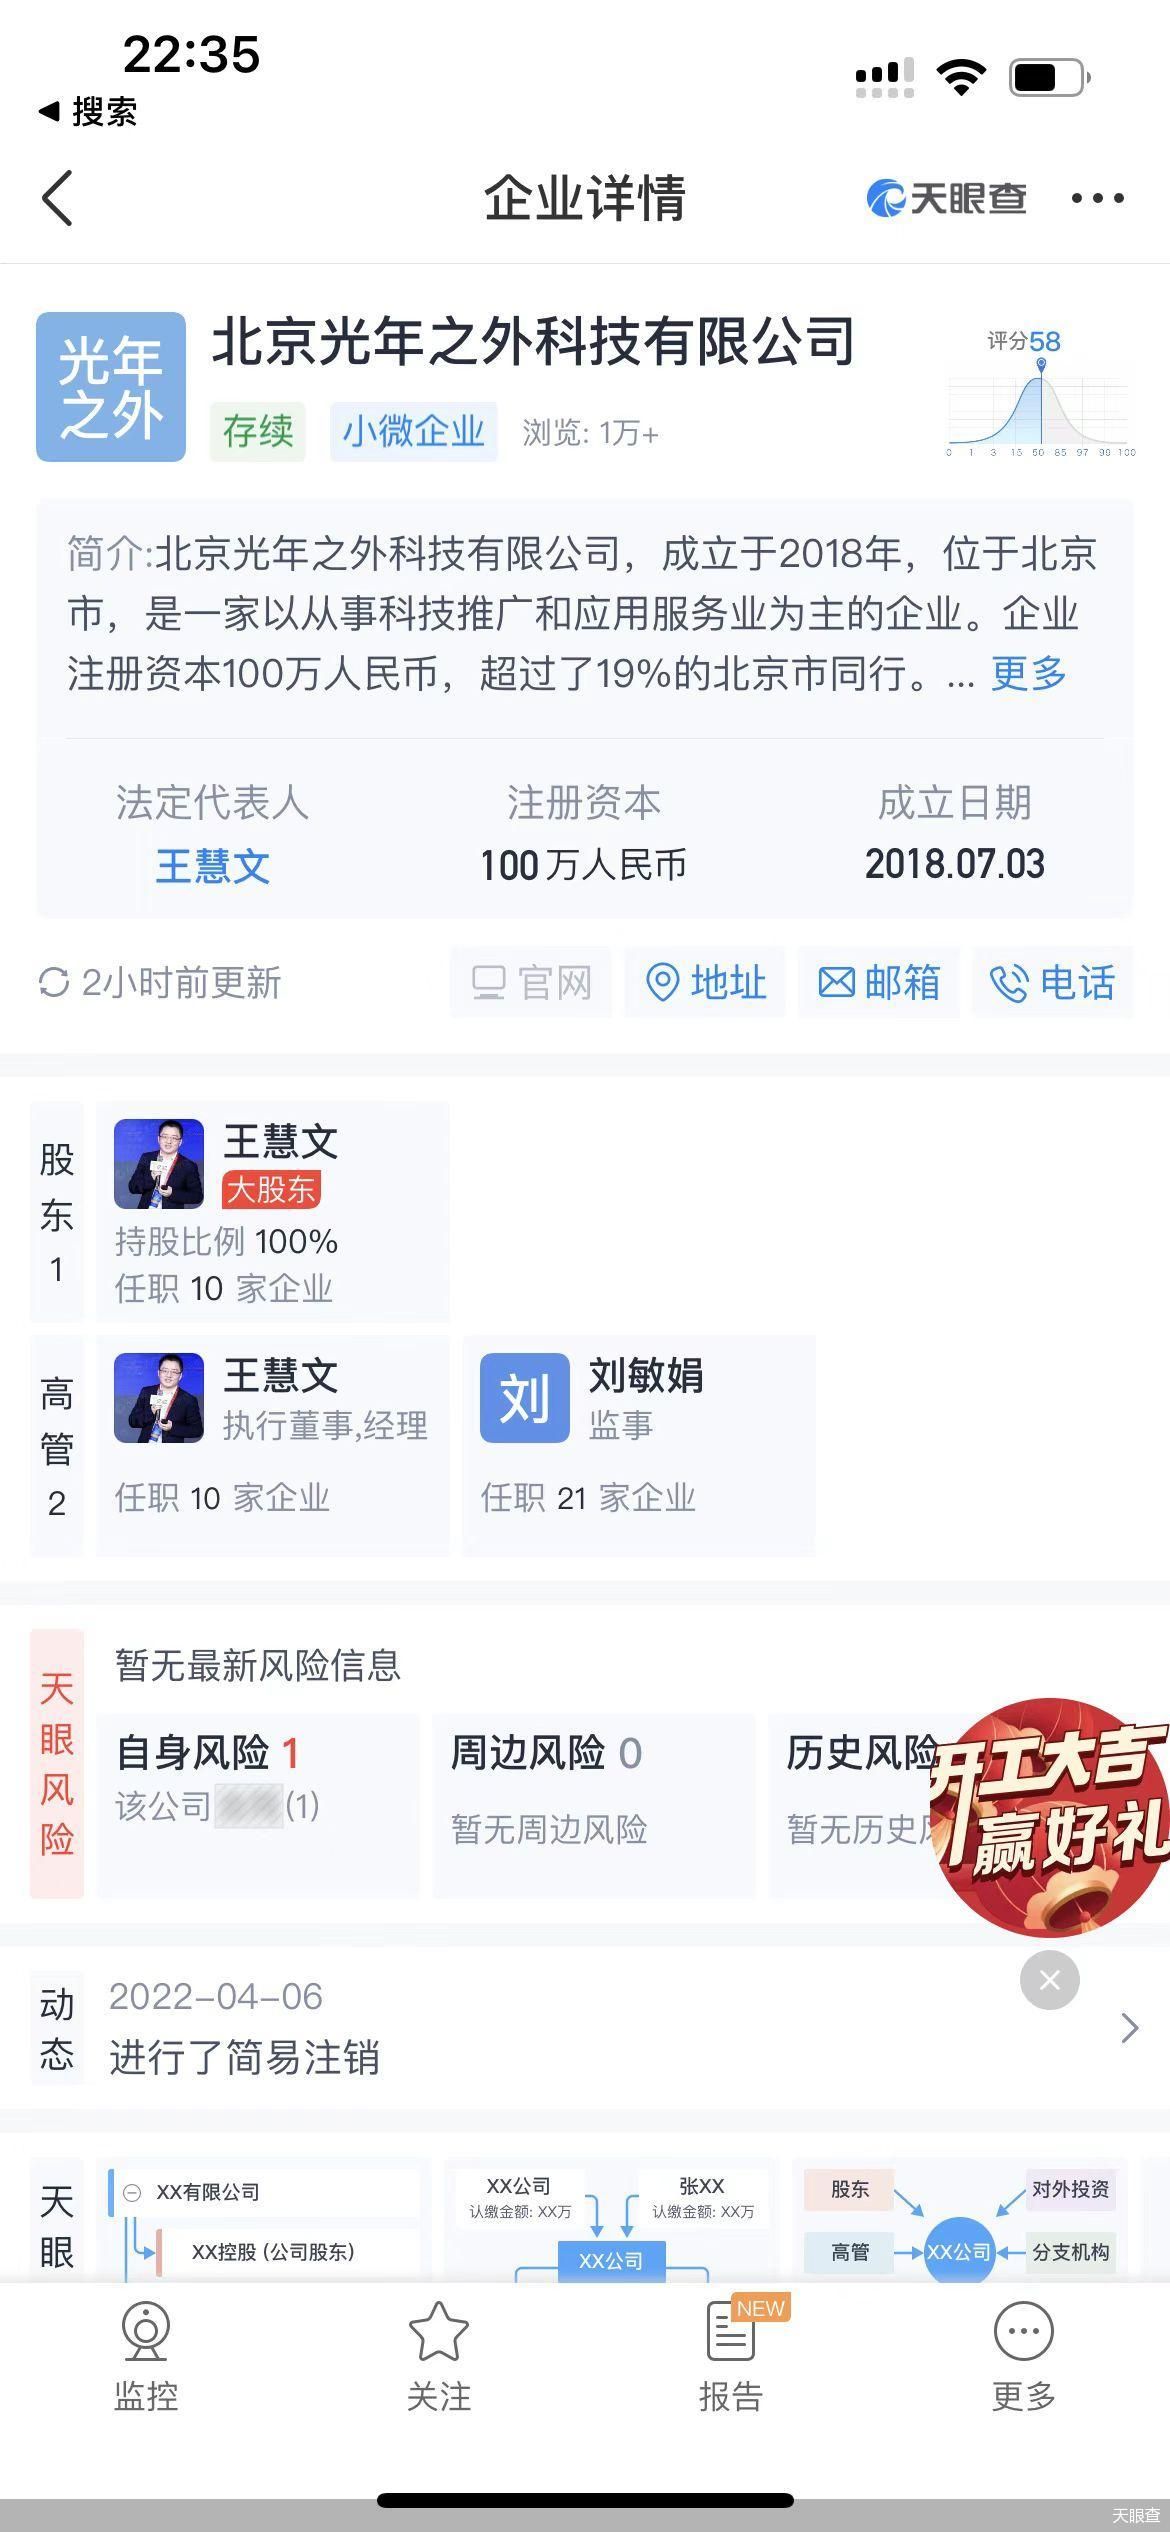 王慧文的AI创业与中国互联网的ChatGPT狂欢